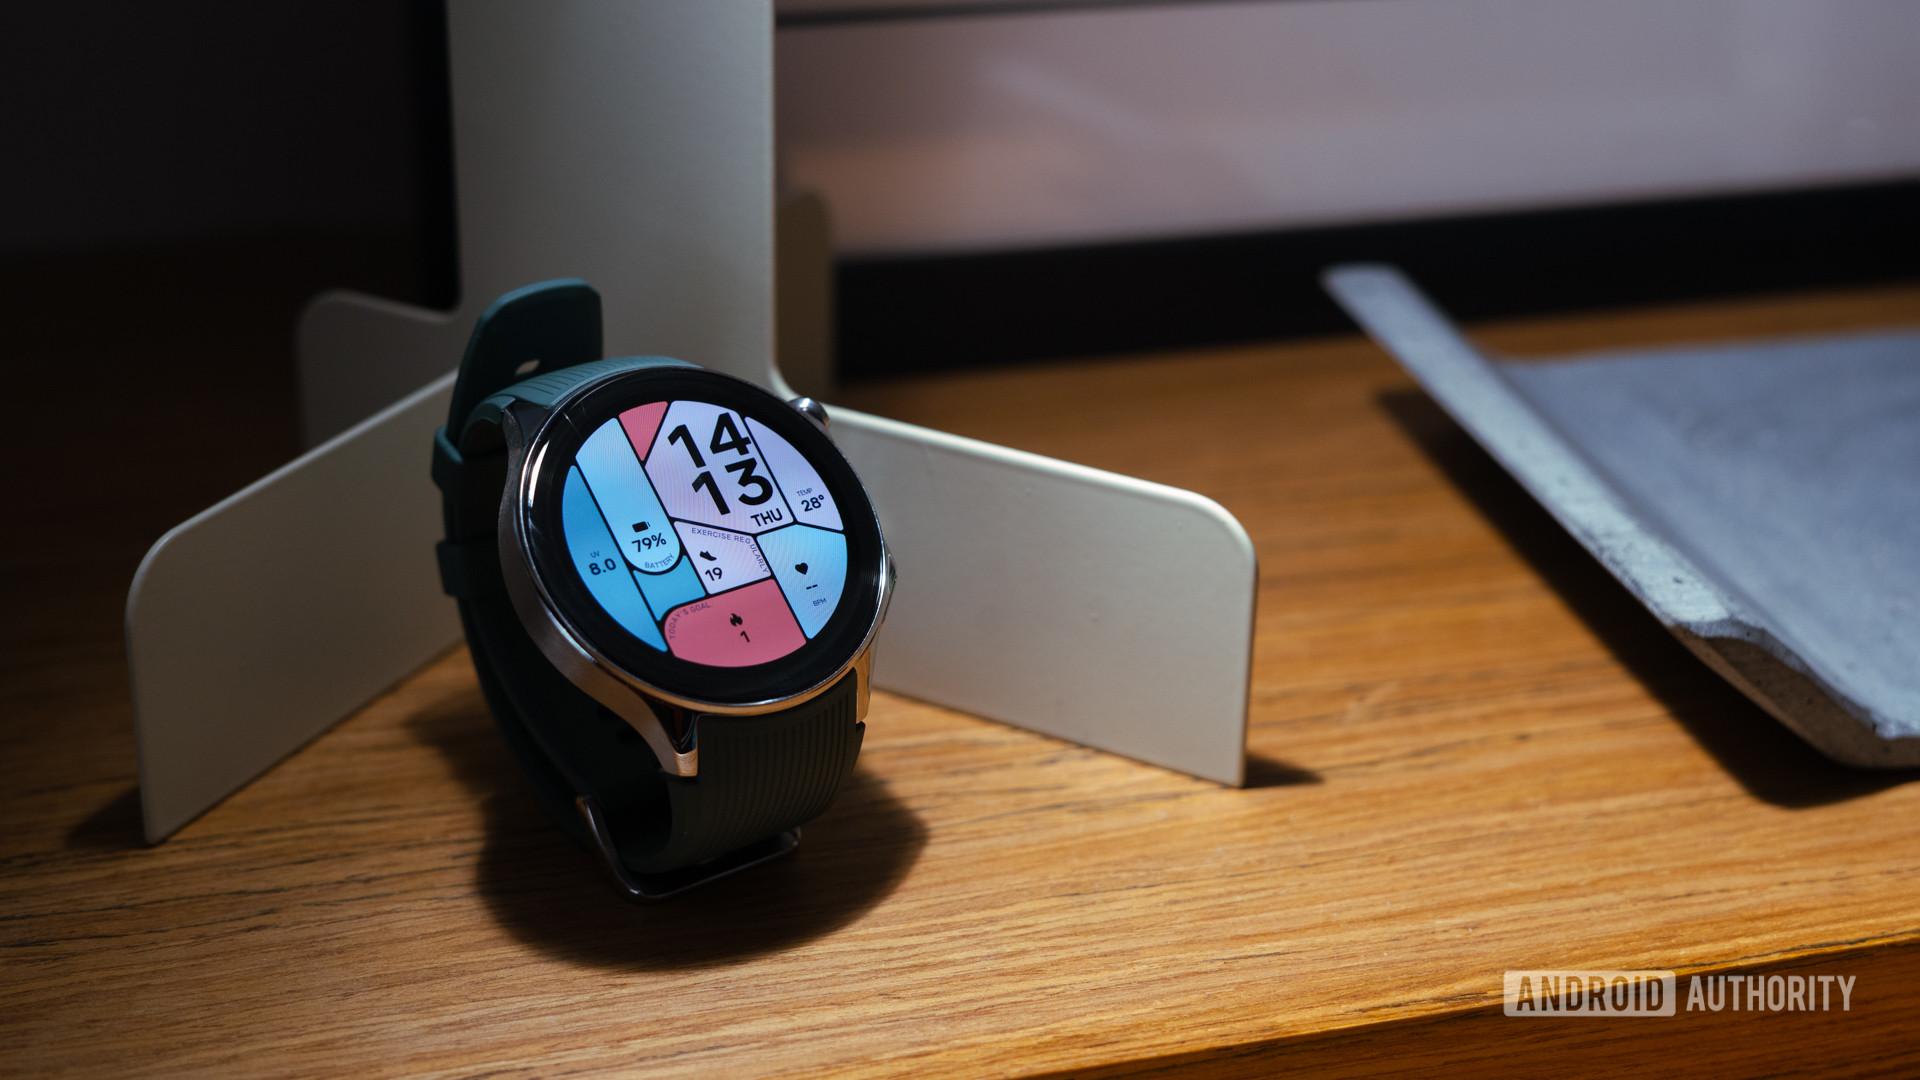 OnePlus-Watch-2-showing-watch-face-on-shelf.jpg